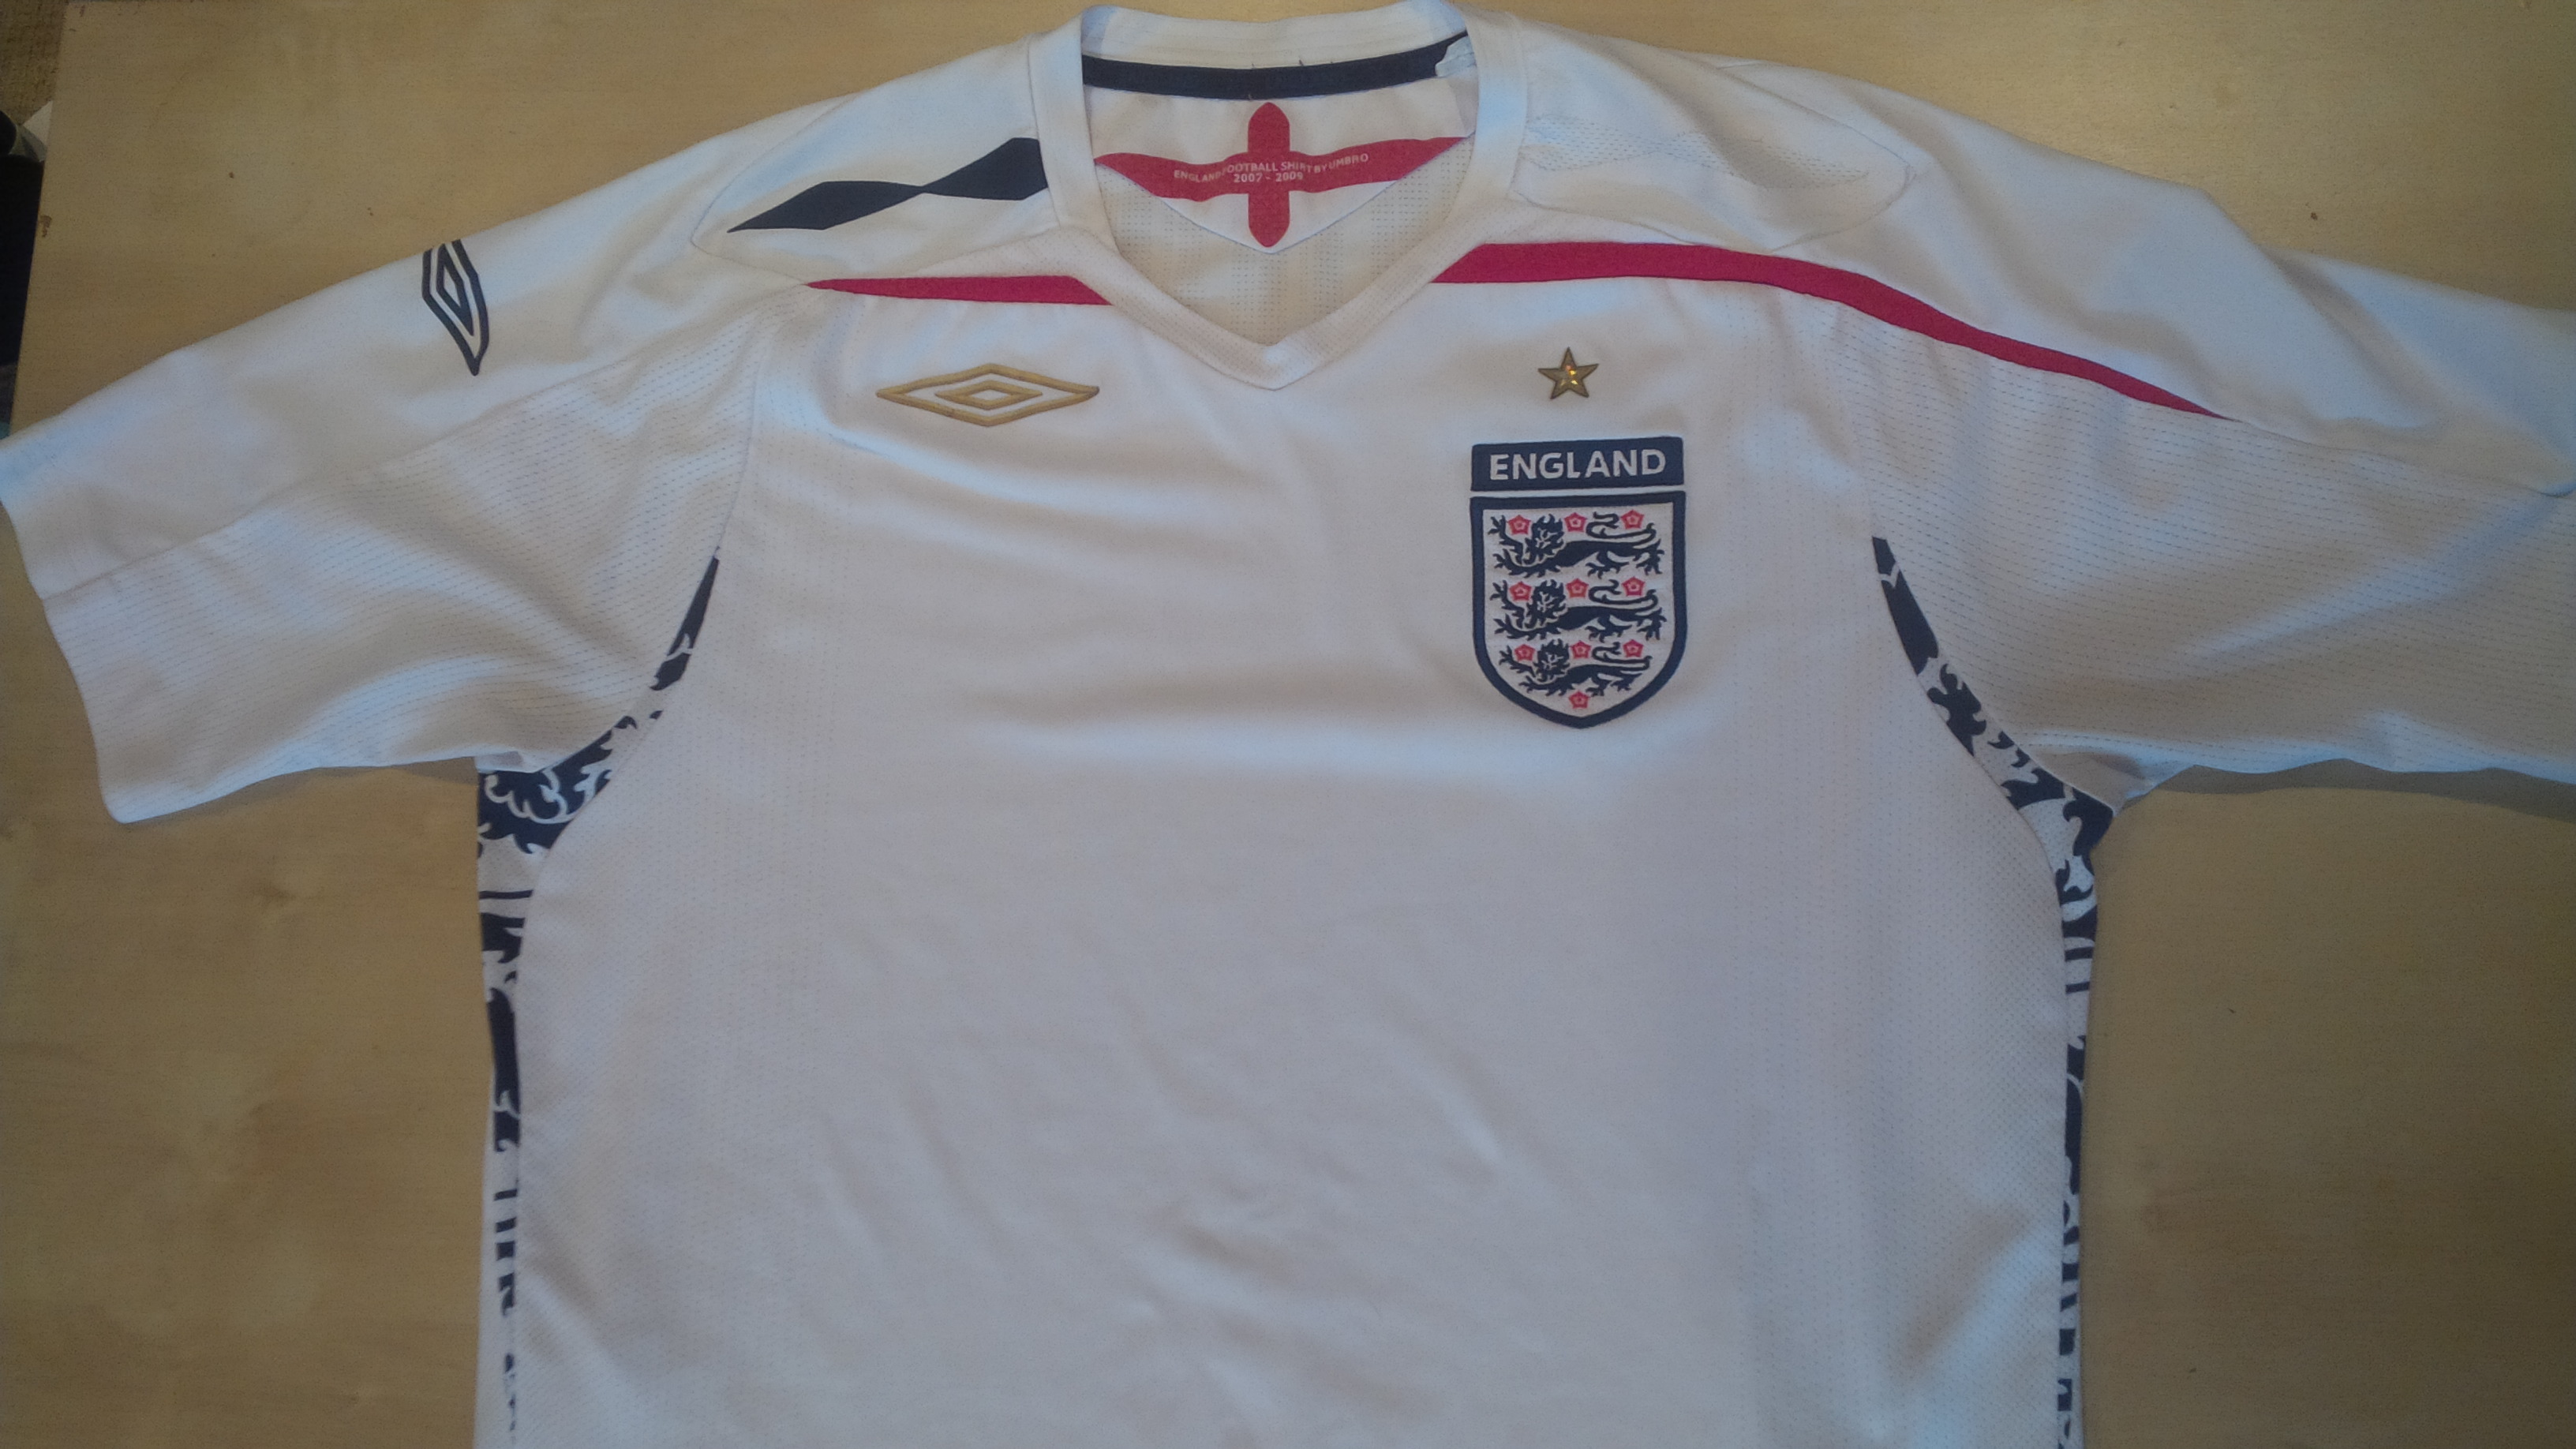 England Home Shirt – Used football shirts